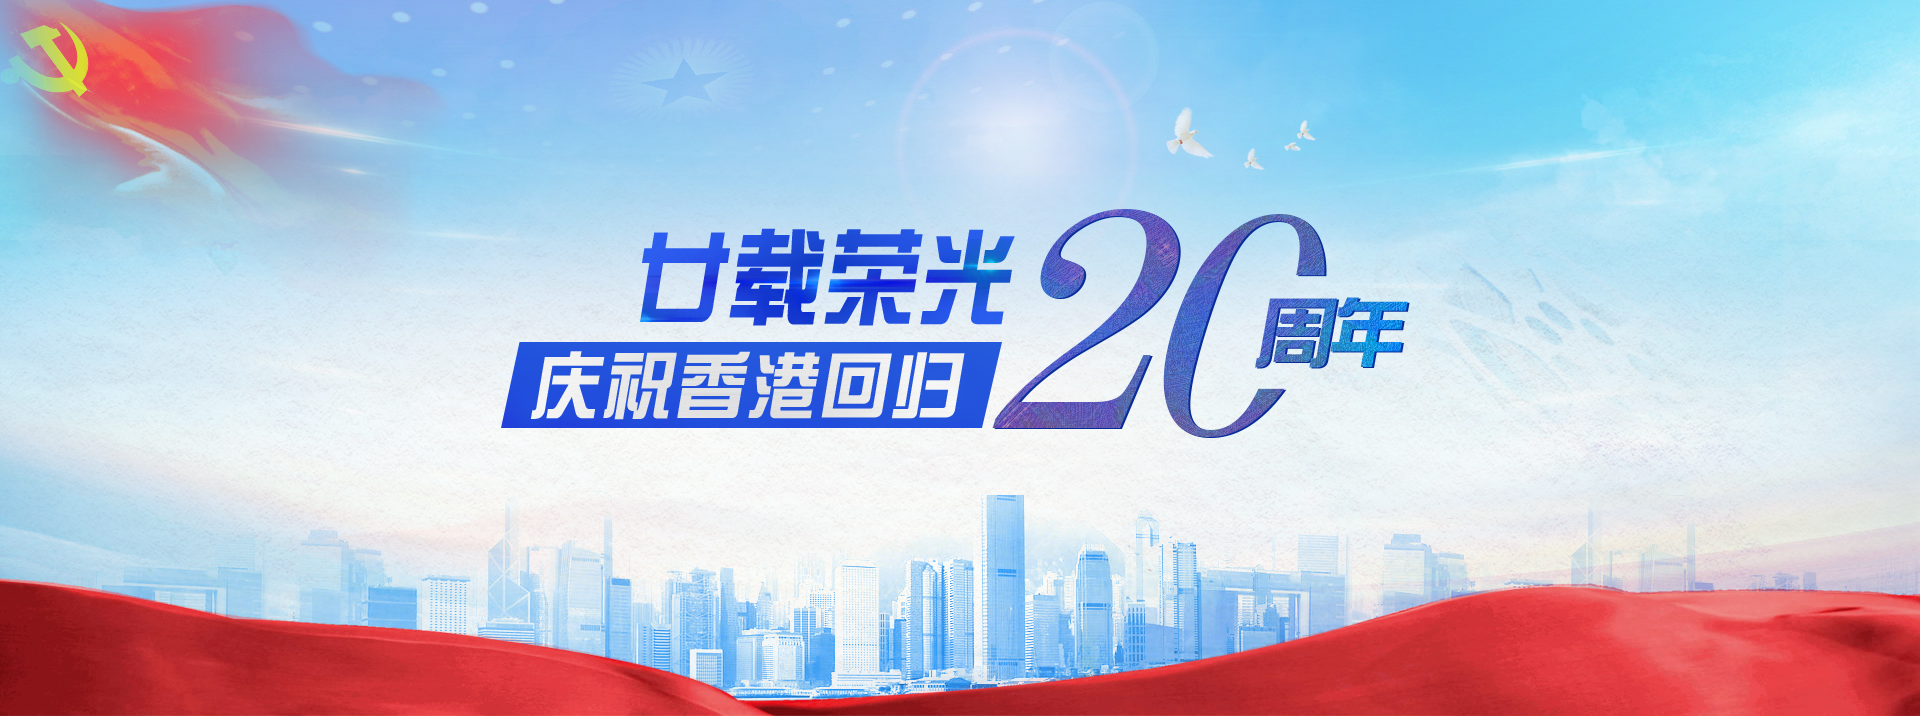 廿载荣光 庆祝香港回归20周年